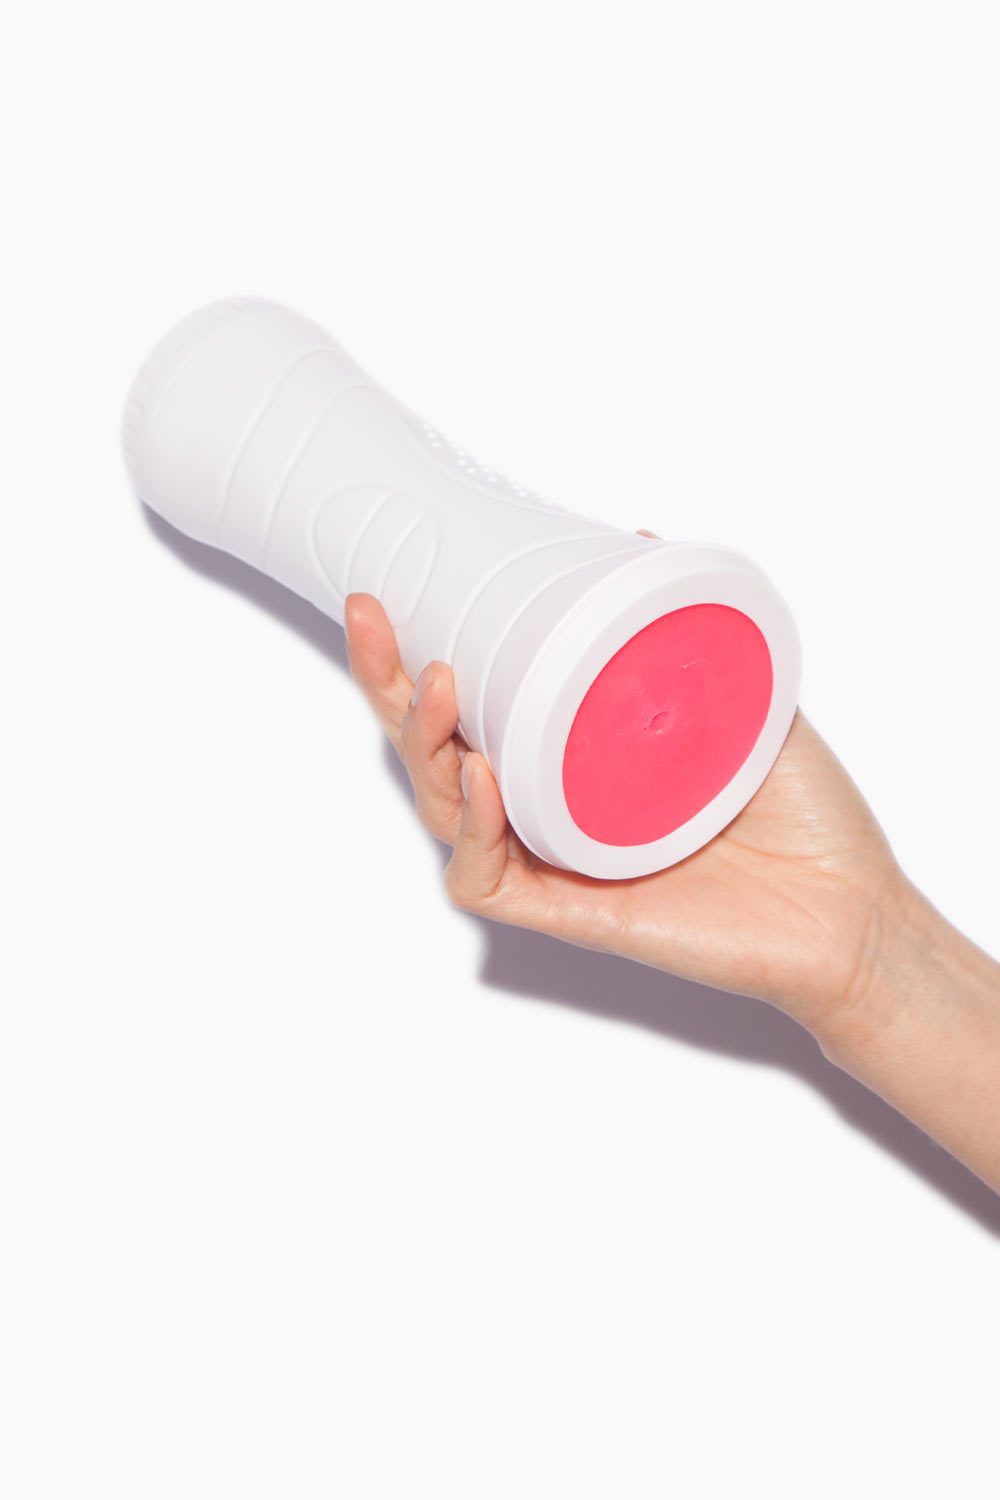 CLONE A PUSSY | Kit para Replicar tu Vulva con Vibración